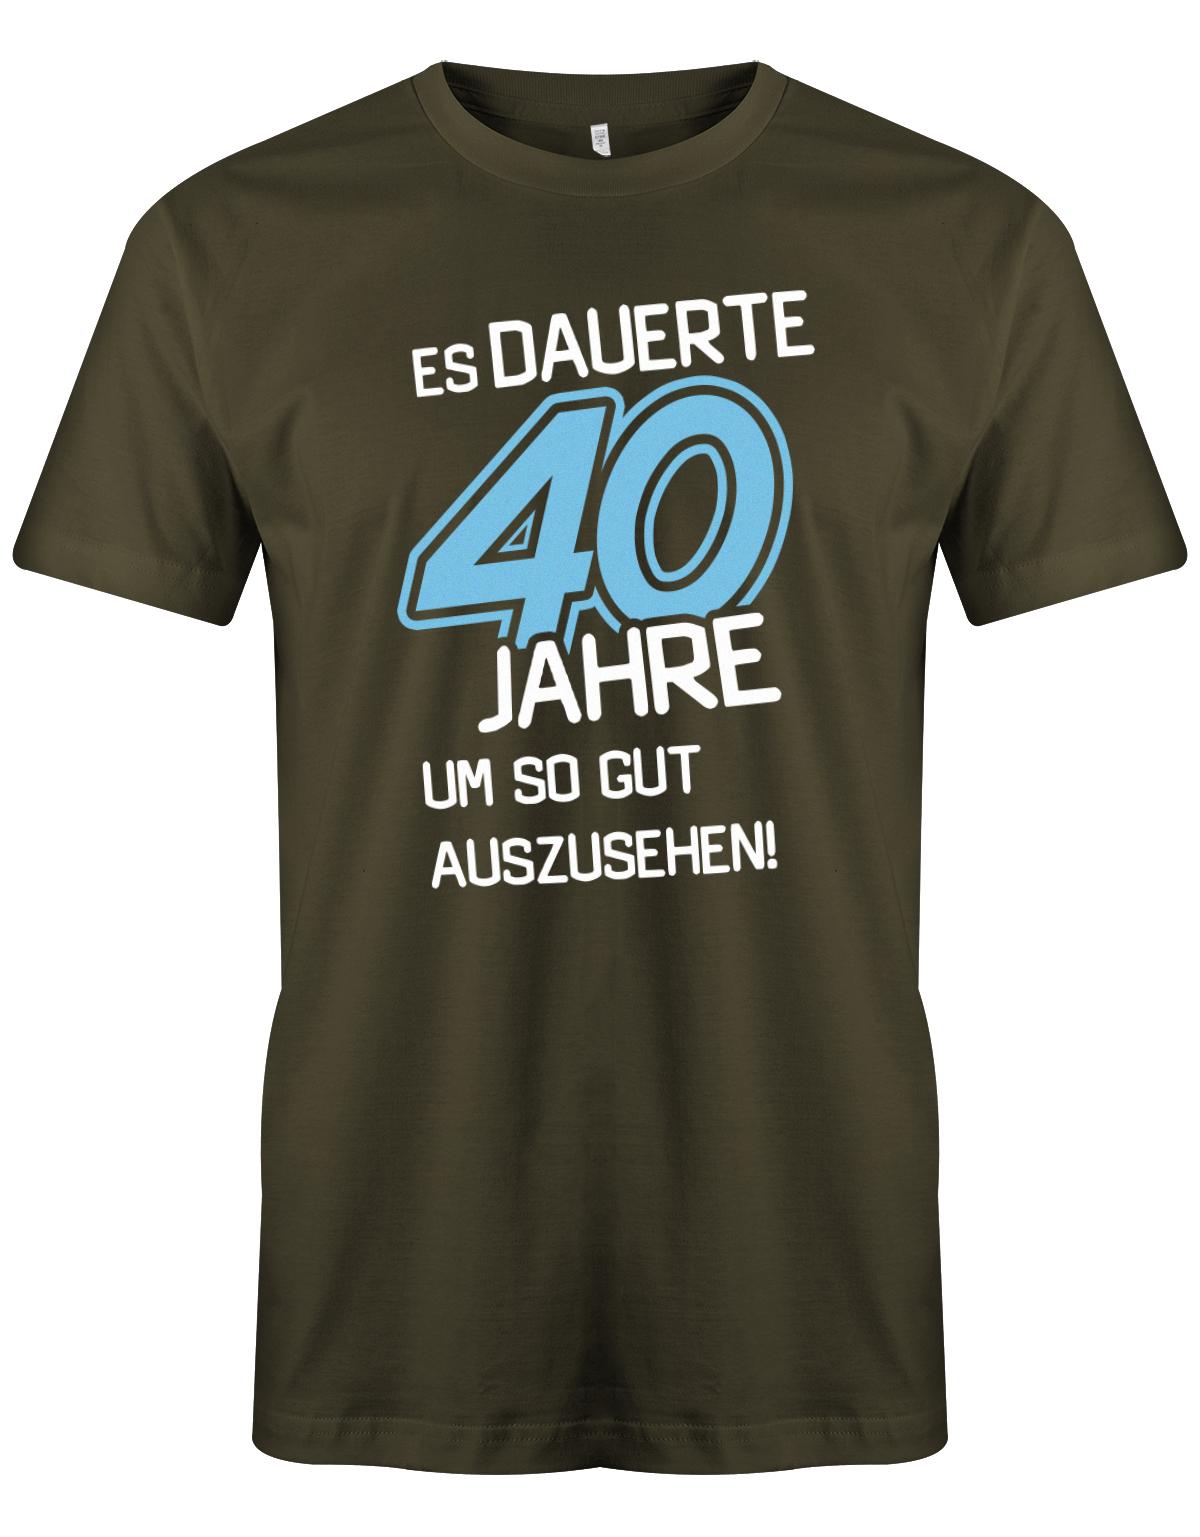 Es dauerte 40 Jahre um so gut auszusehen - T-Shirt 40 Geburtstag Männer - 1983 myShirtStore Army